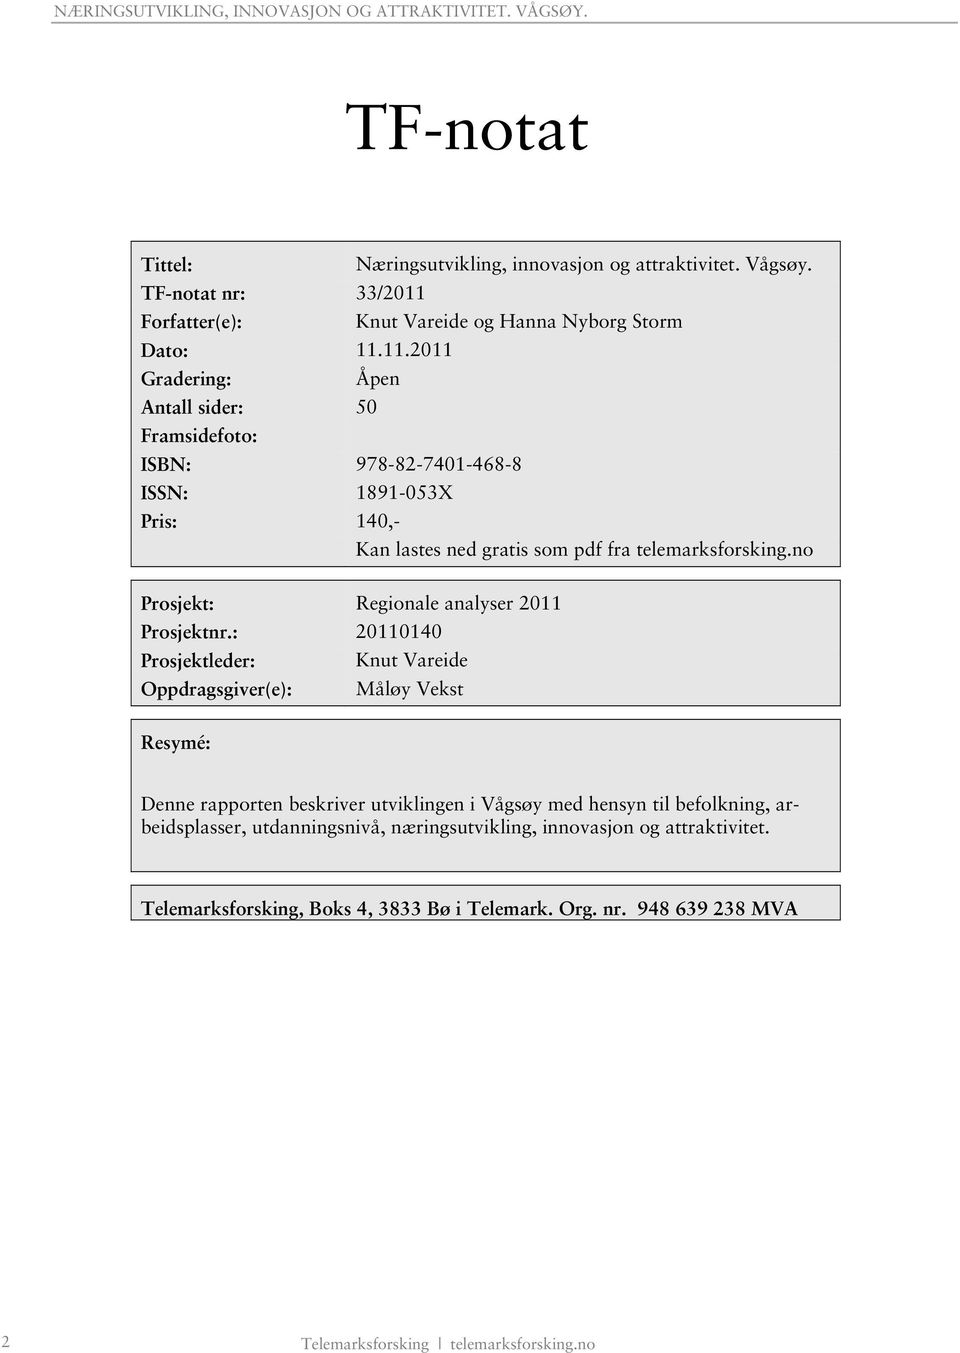 11.2011 Gradering: Åpen Antall sider: 50 Framsidefoto: ISBN: 978-82-7401-468-8 ISSN: 1891-053X Pris: 140,- Kan lastes ned gratis som pdf fra telemarksforsking.